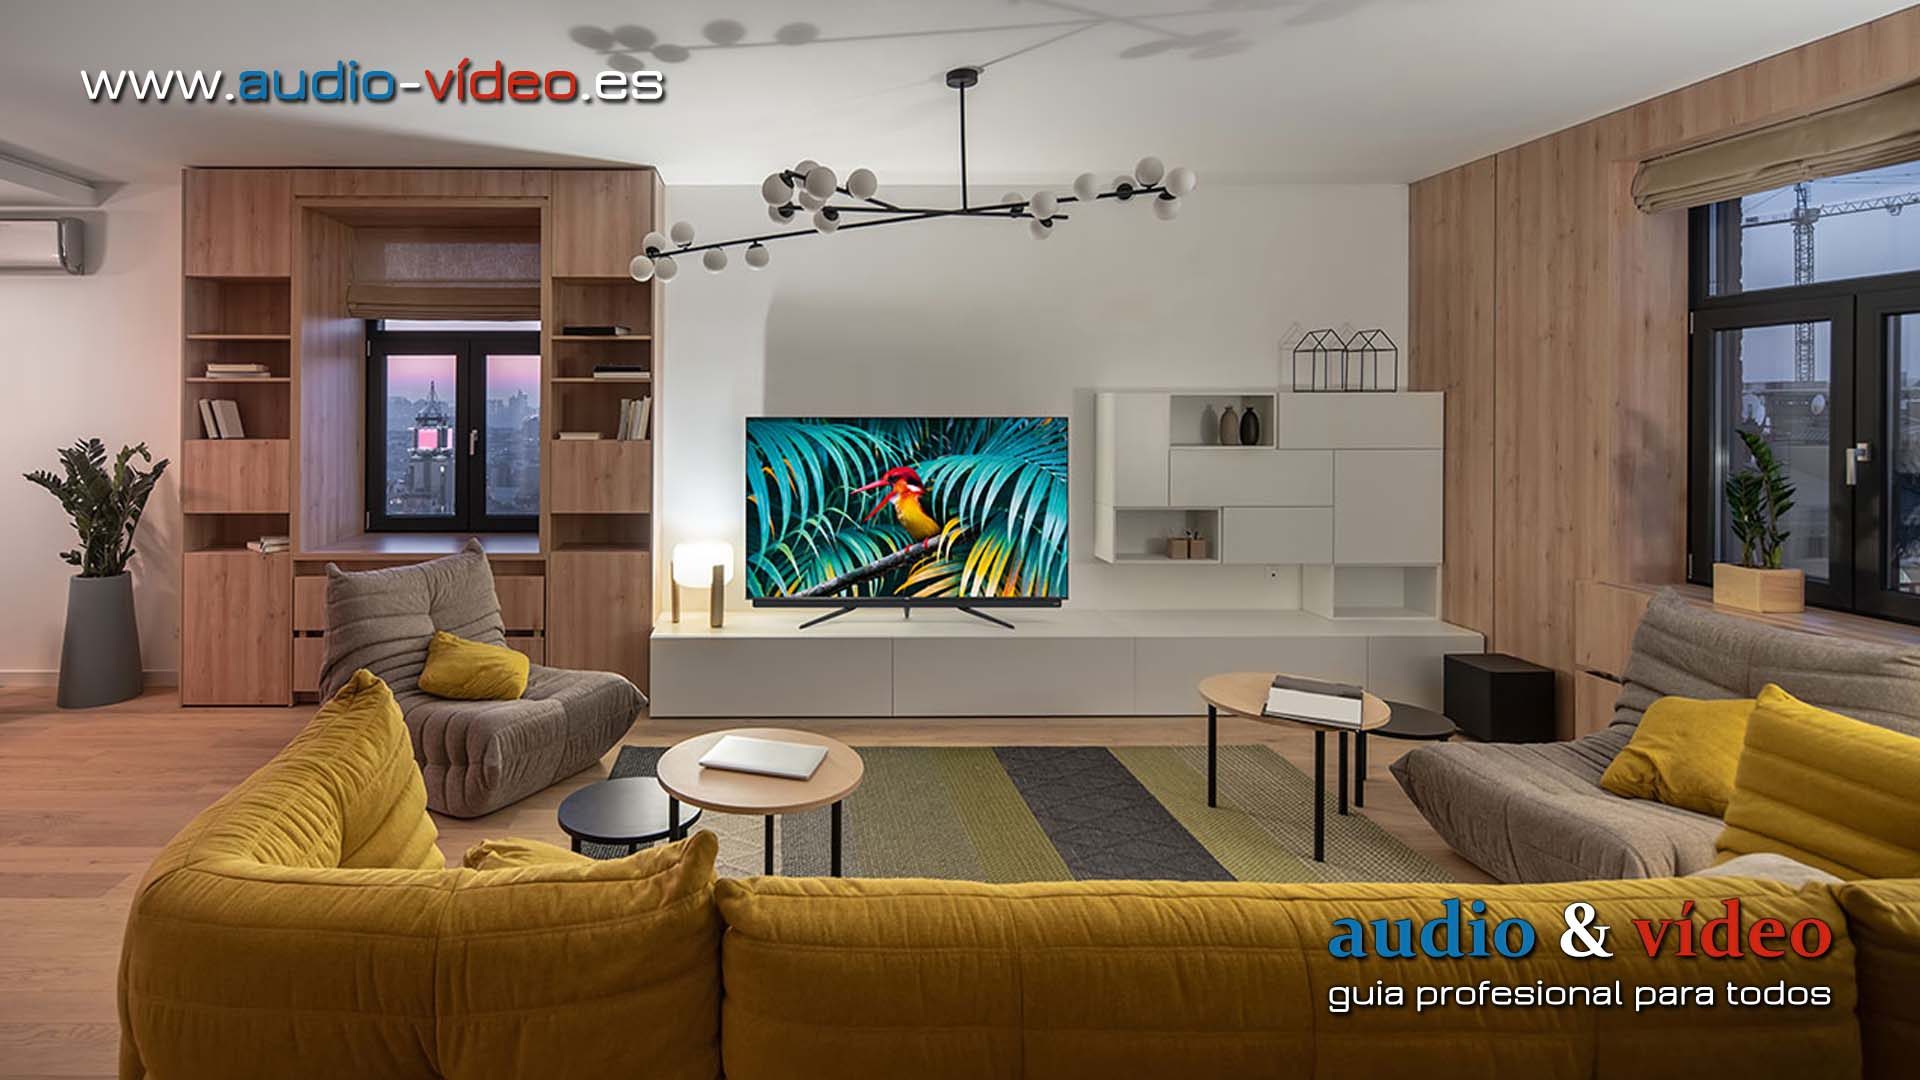 Televisores SmartTV de TCL C71 y C81 con sistema Android TV y Dolby Vision